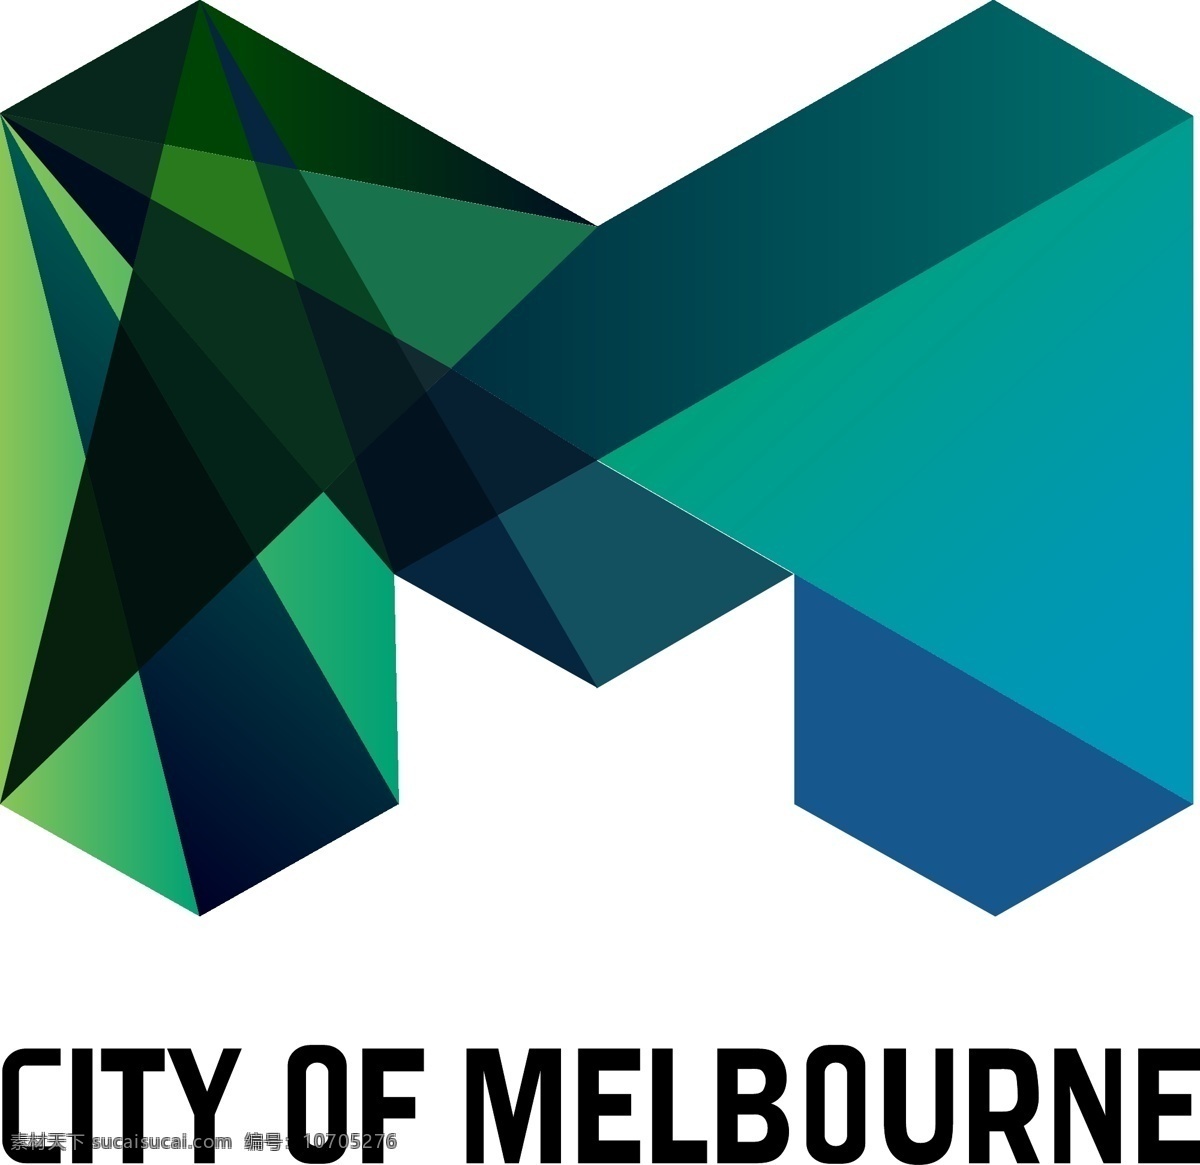 墨尔本 城市标志 城市 标志 标识 澳大利亚 logo 标识标志图标 矢量